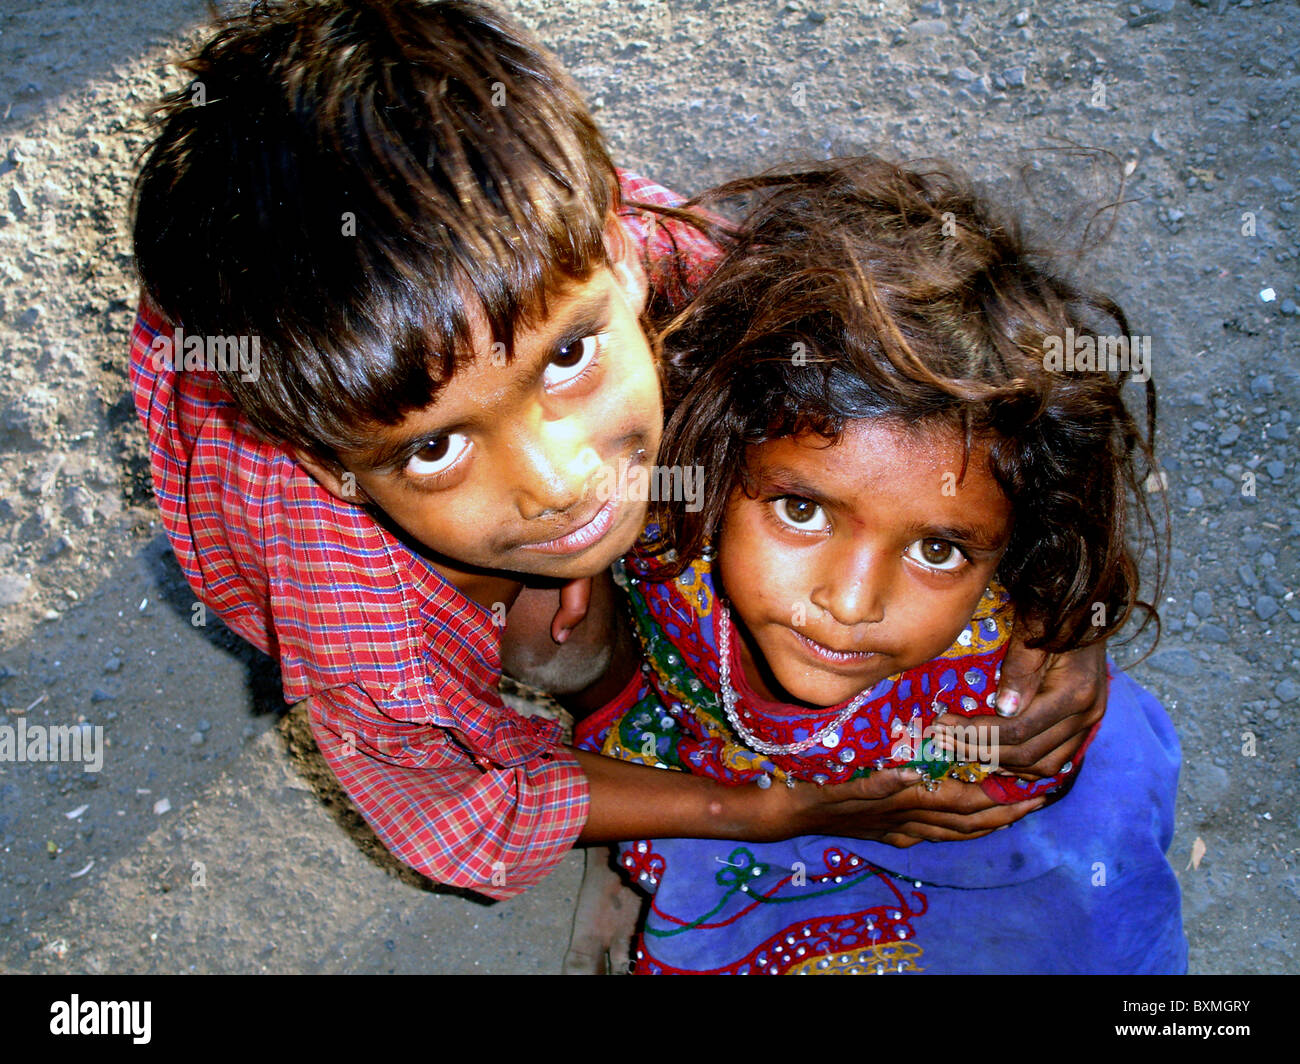 Portrait ou rapprochée de deux enfants des rues indiennes avec l'innocence en face de la rue de l'Inde Banque D'Images